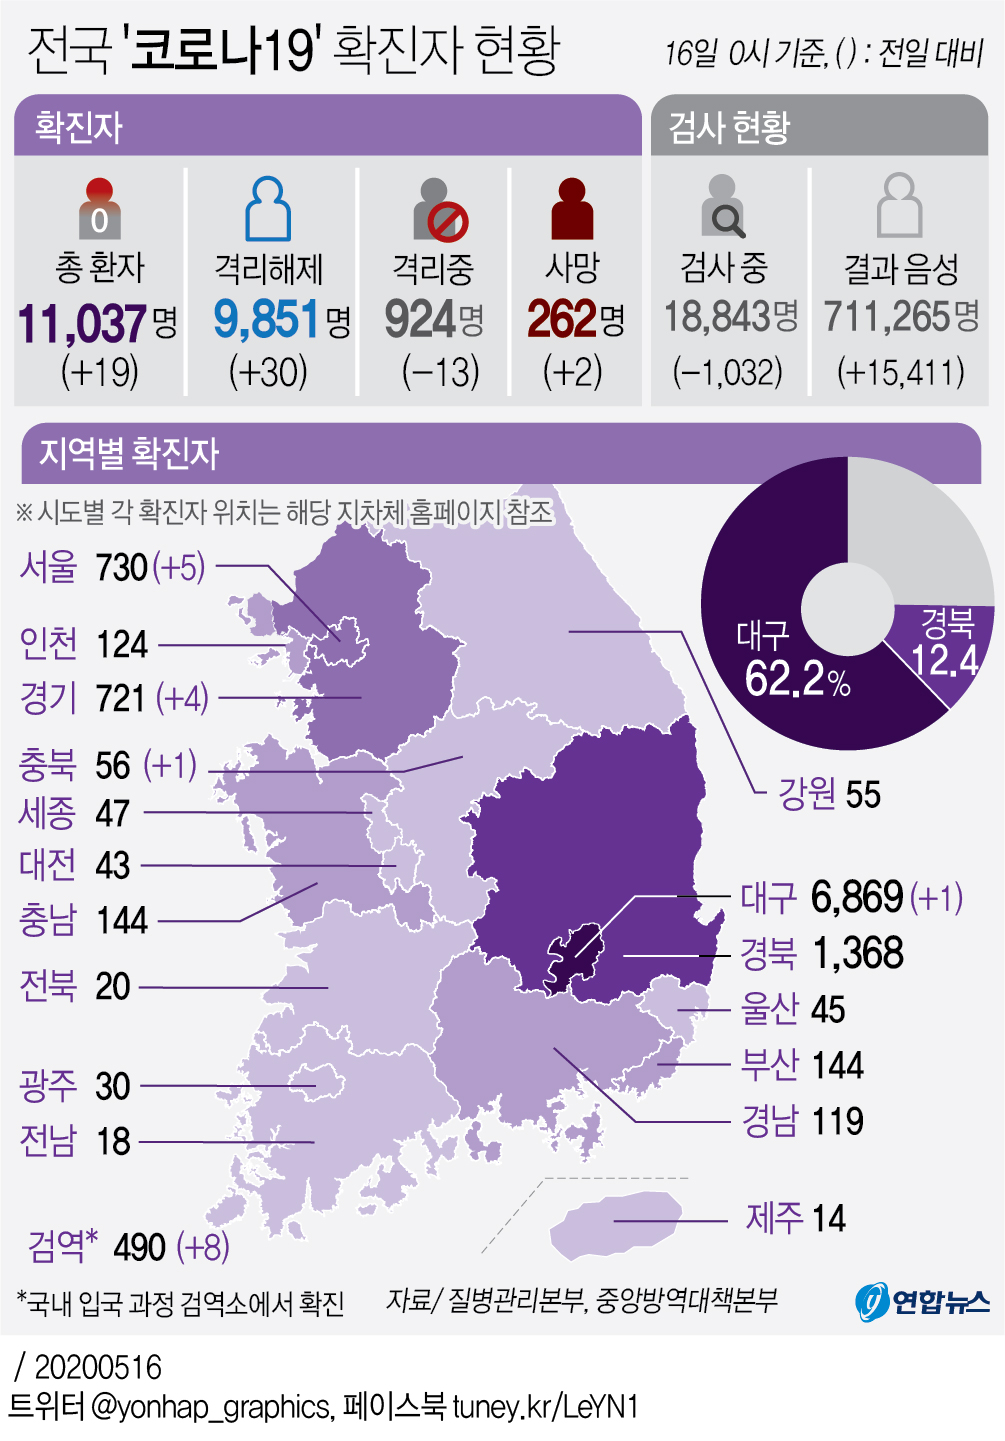 [그래픽] 전국 '코로나19' 확진자 현황